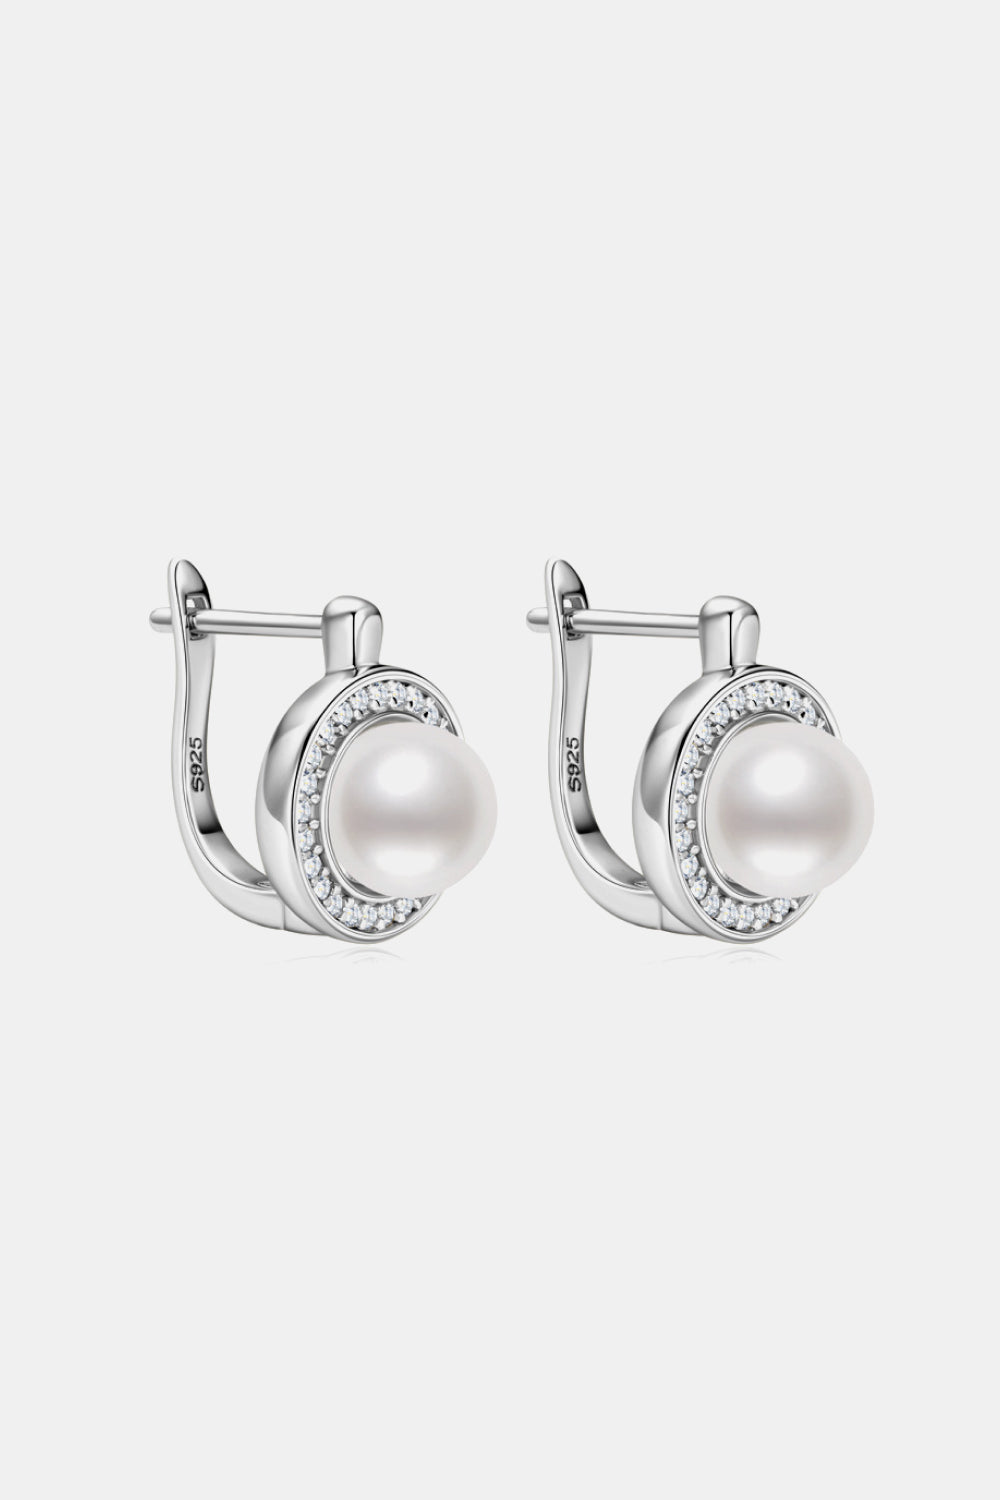 Women’s Moissanite Pearl 925 Sterling Silver Earrings